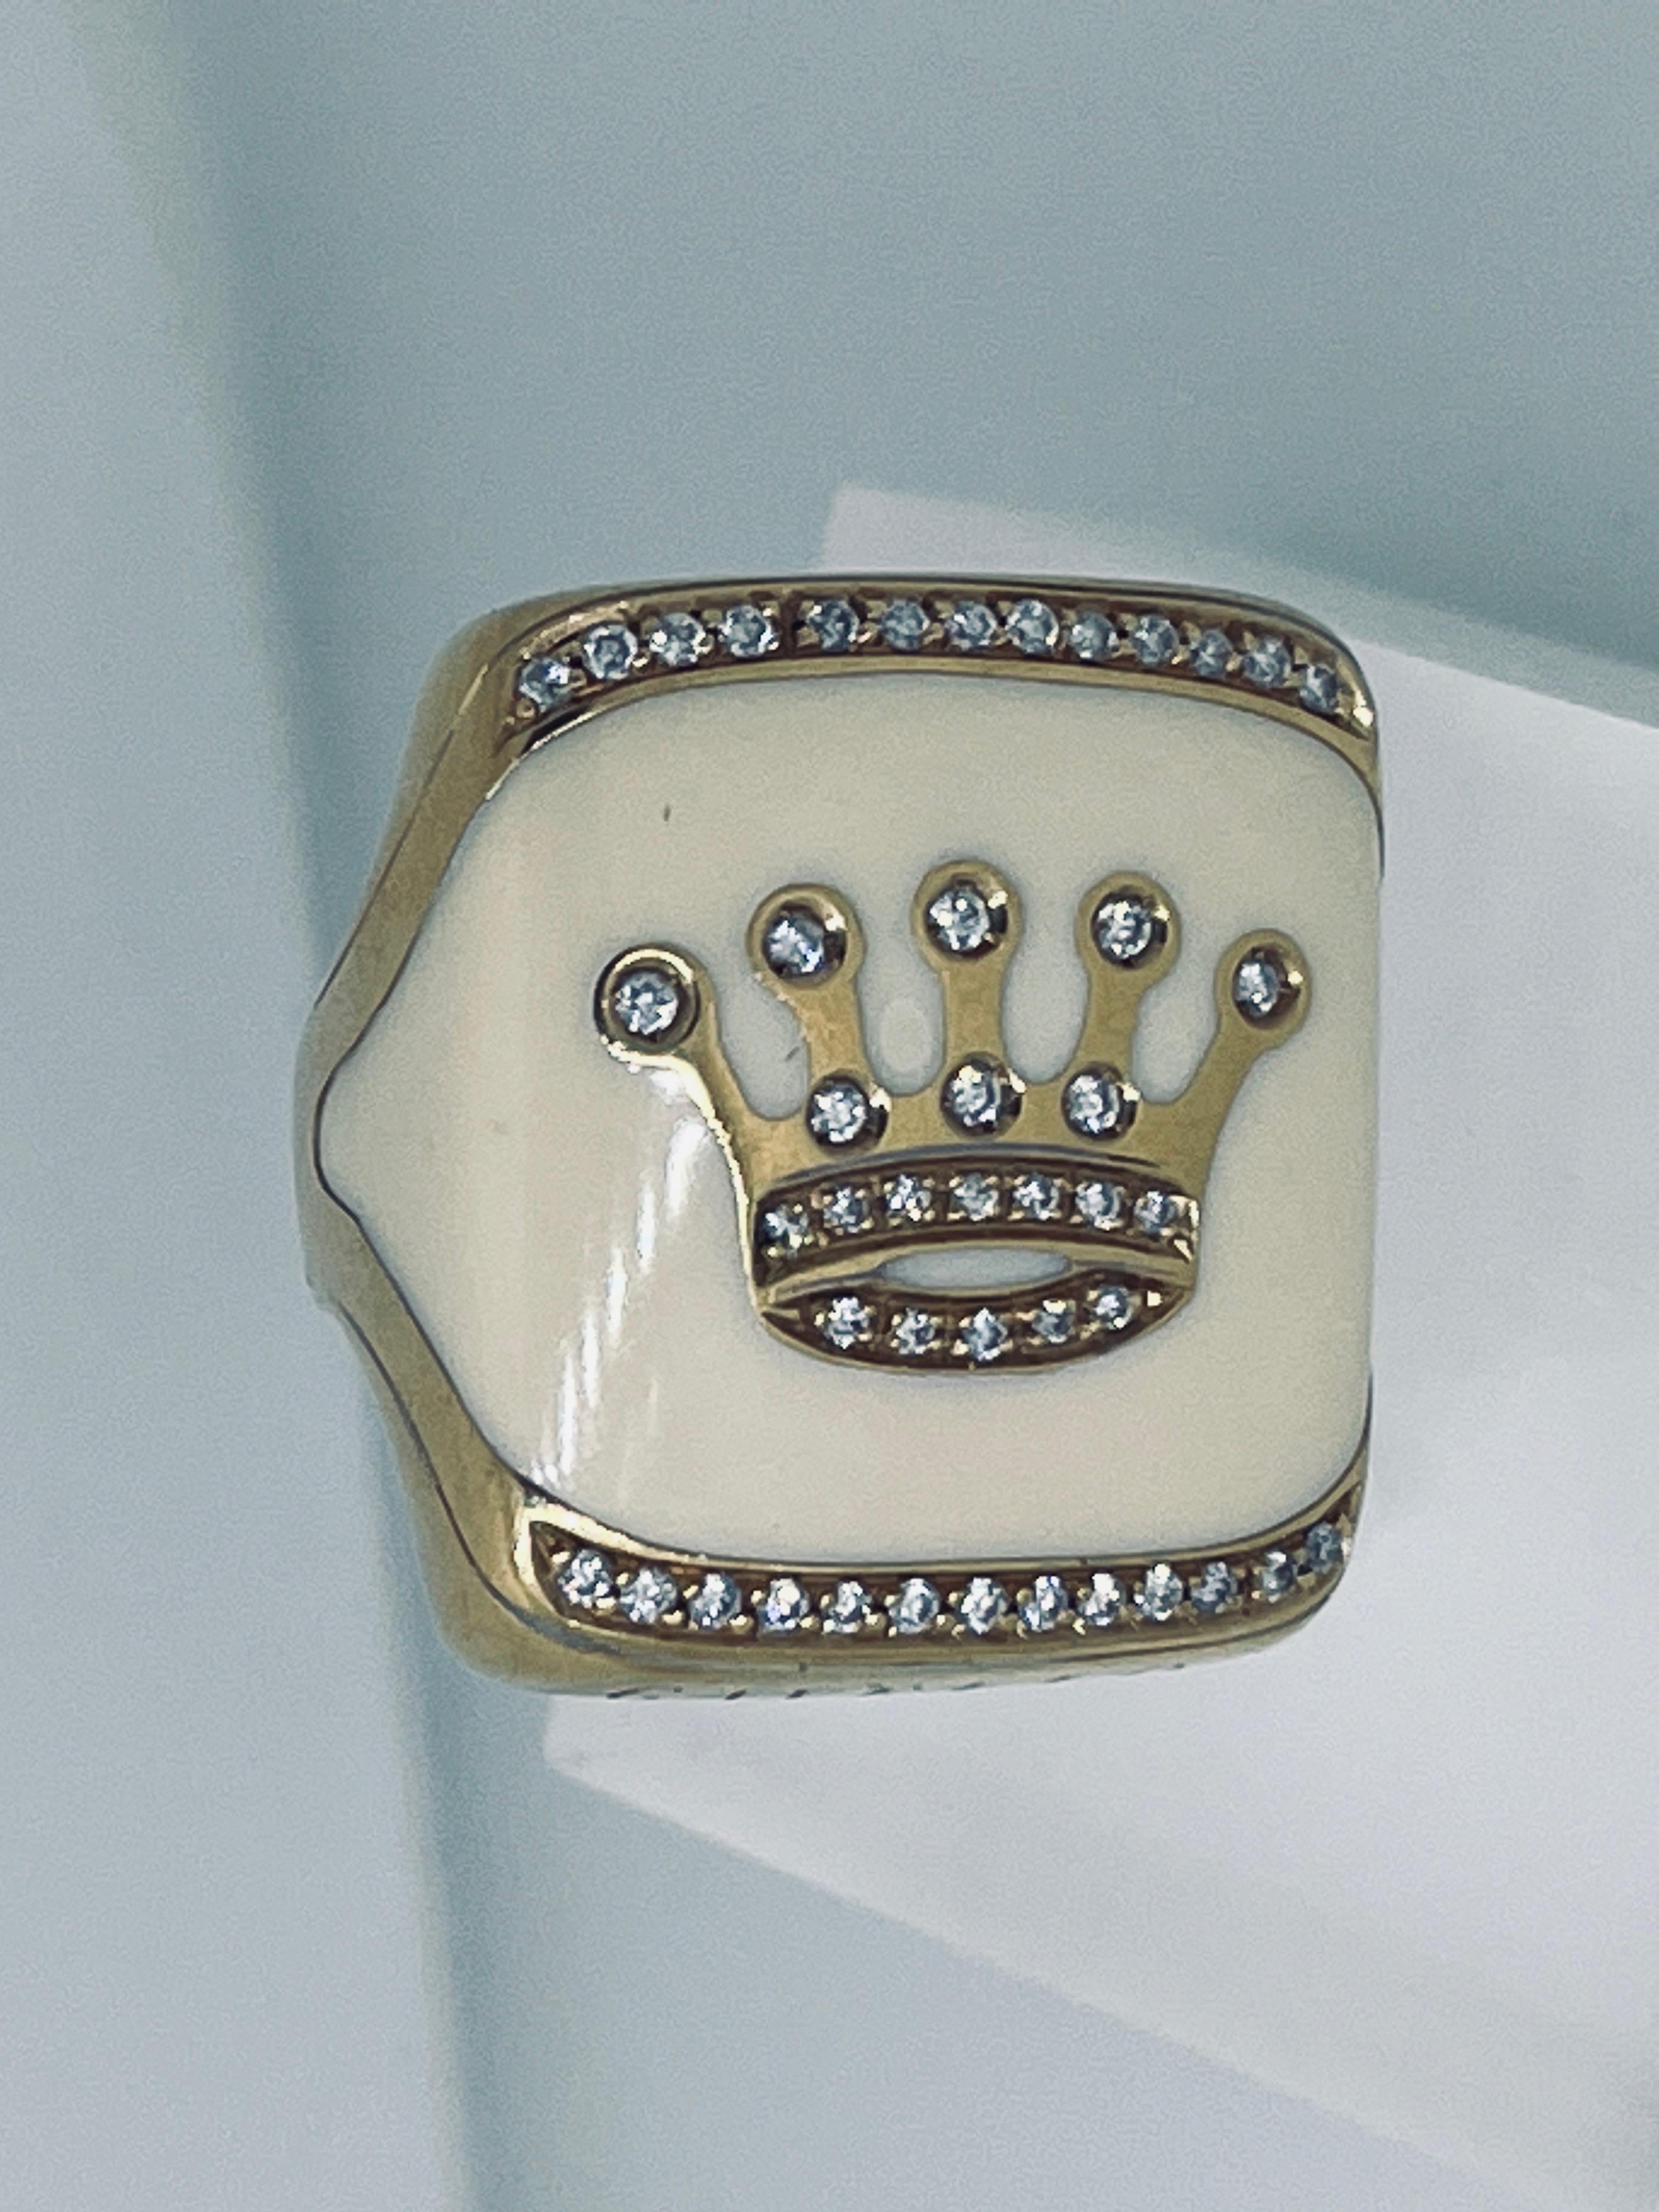 Kronenring aus 18 Karat Gold von Gavello (einem italienischen Designer), mit Emaille und Diamanten besetzt, ca. 0,4 Karat, Gesamtgewicht 22,7 Gramm. Der Ring ist in der Größe veränderbar. Größe ist: K1/2 (UK), 51 (EU), 5.75 (US), 16.1mm